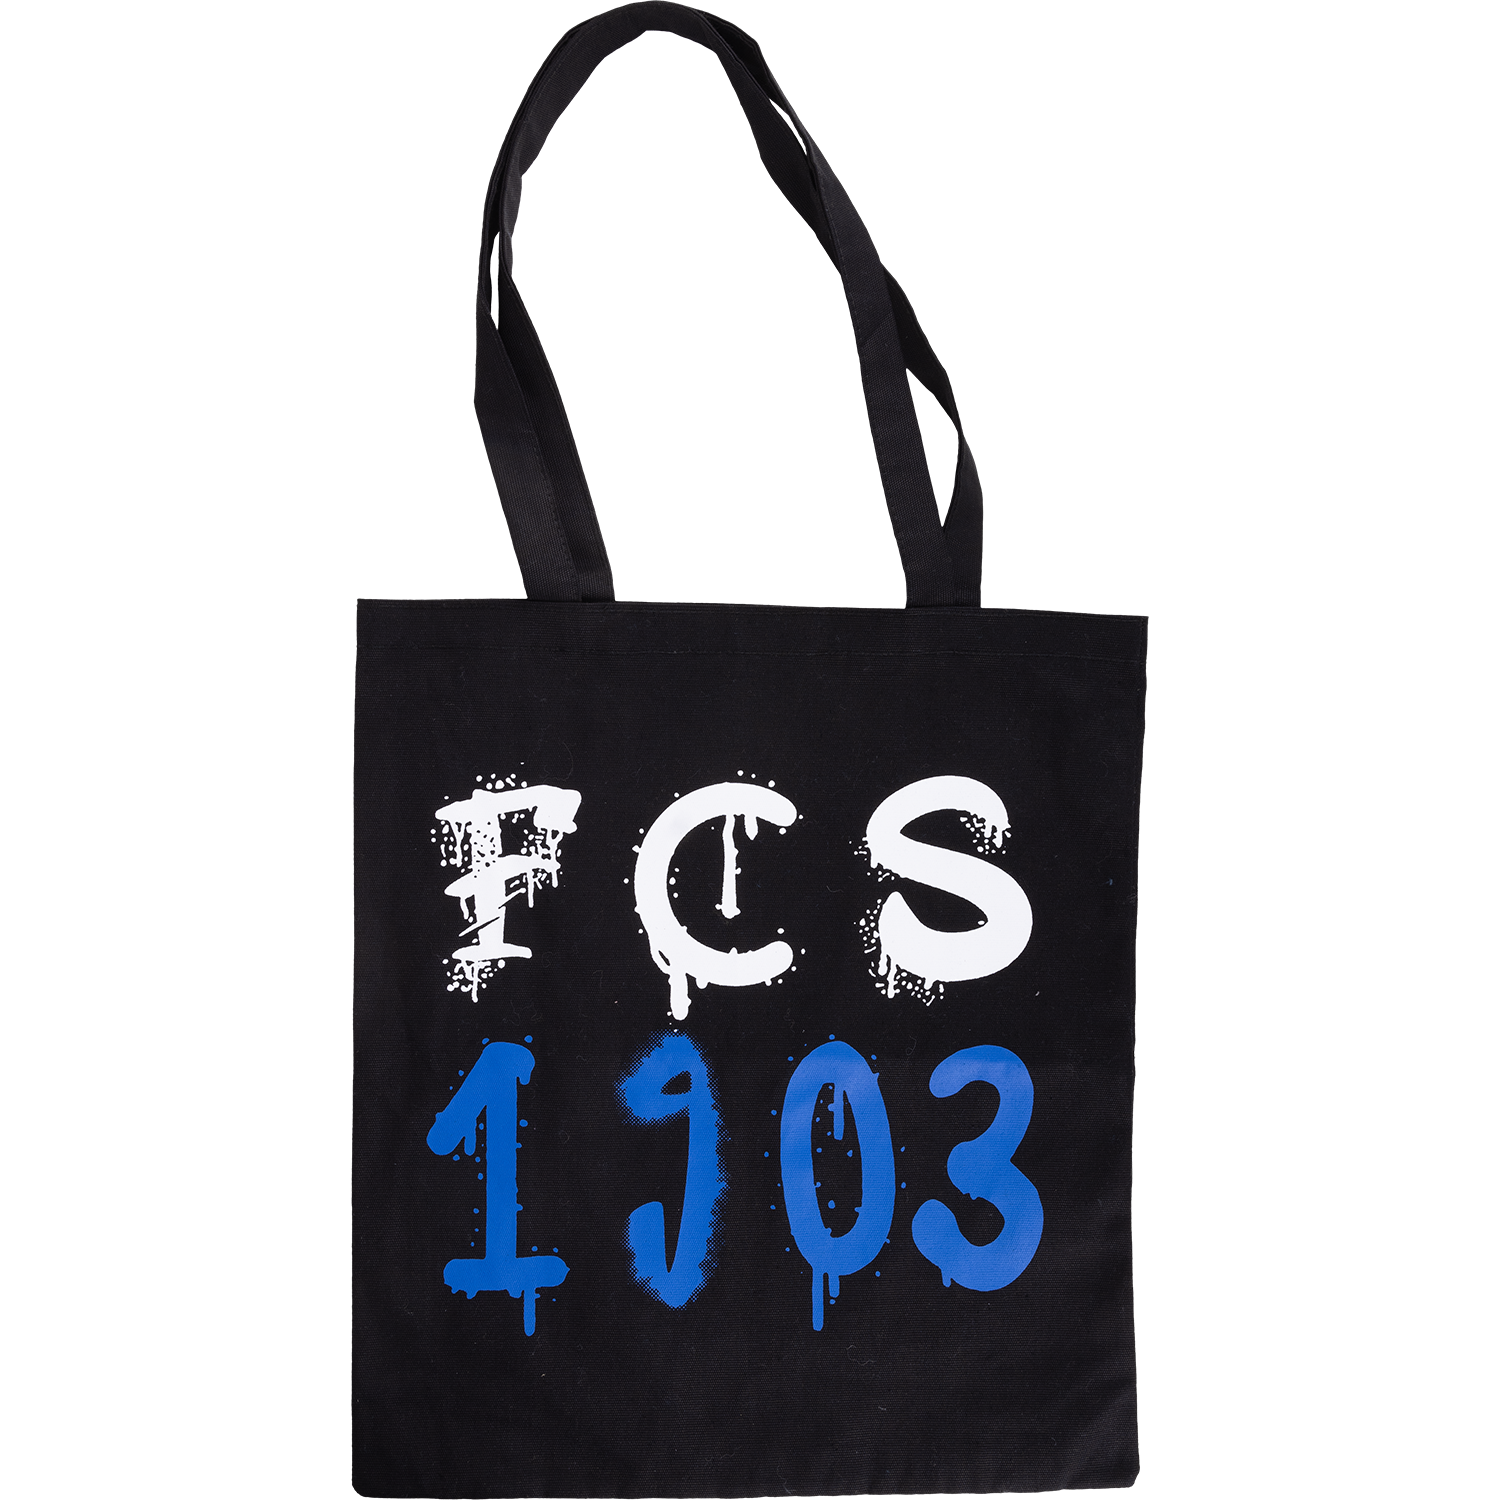 FCS-Shopper 1903 aus Filz